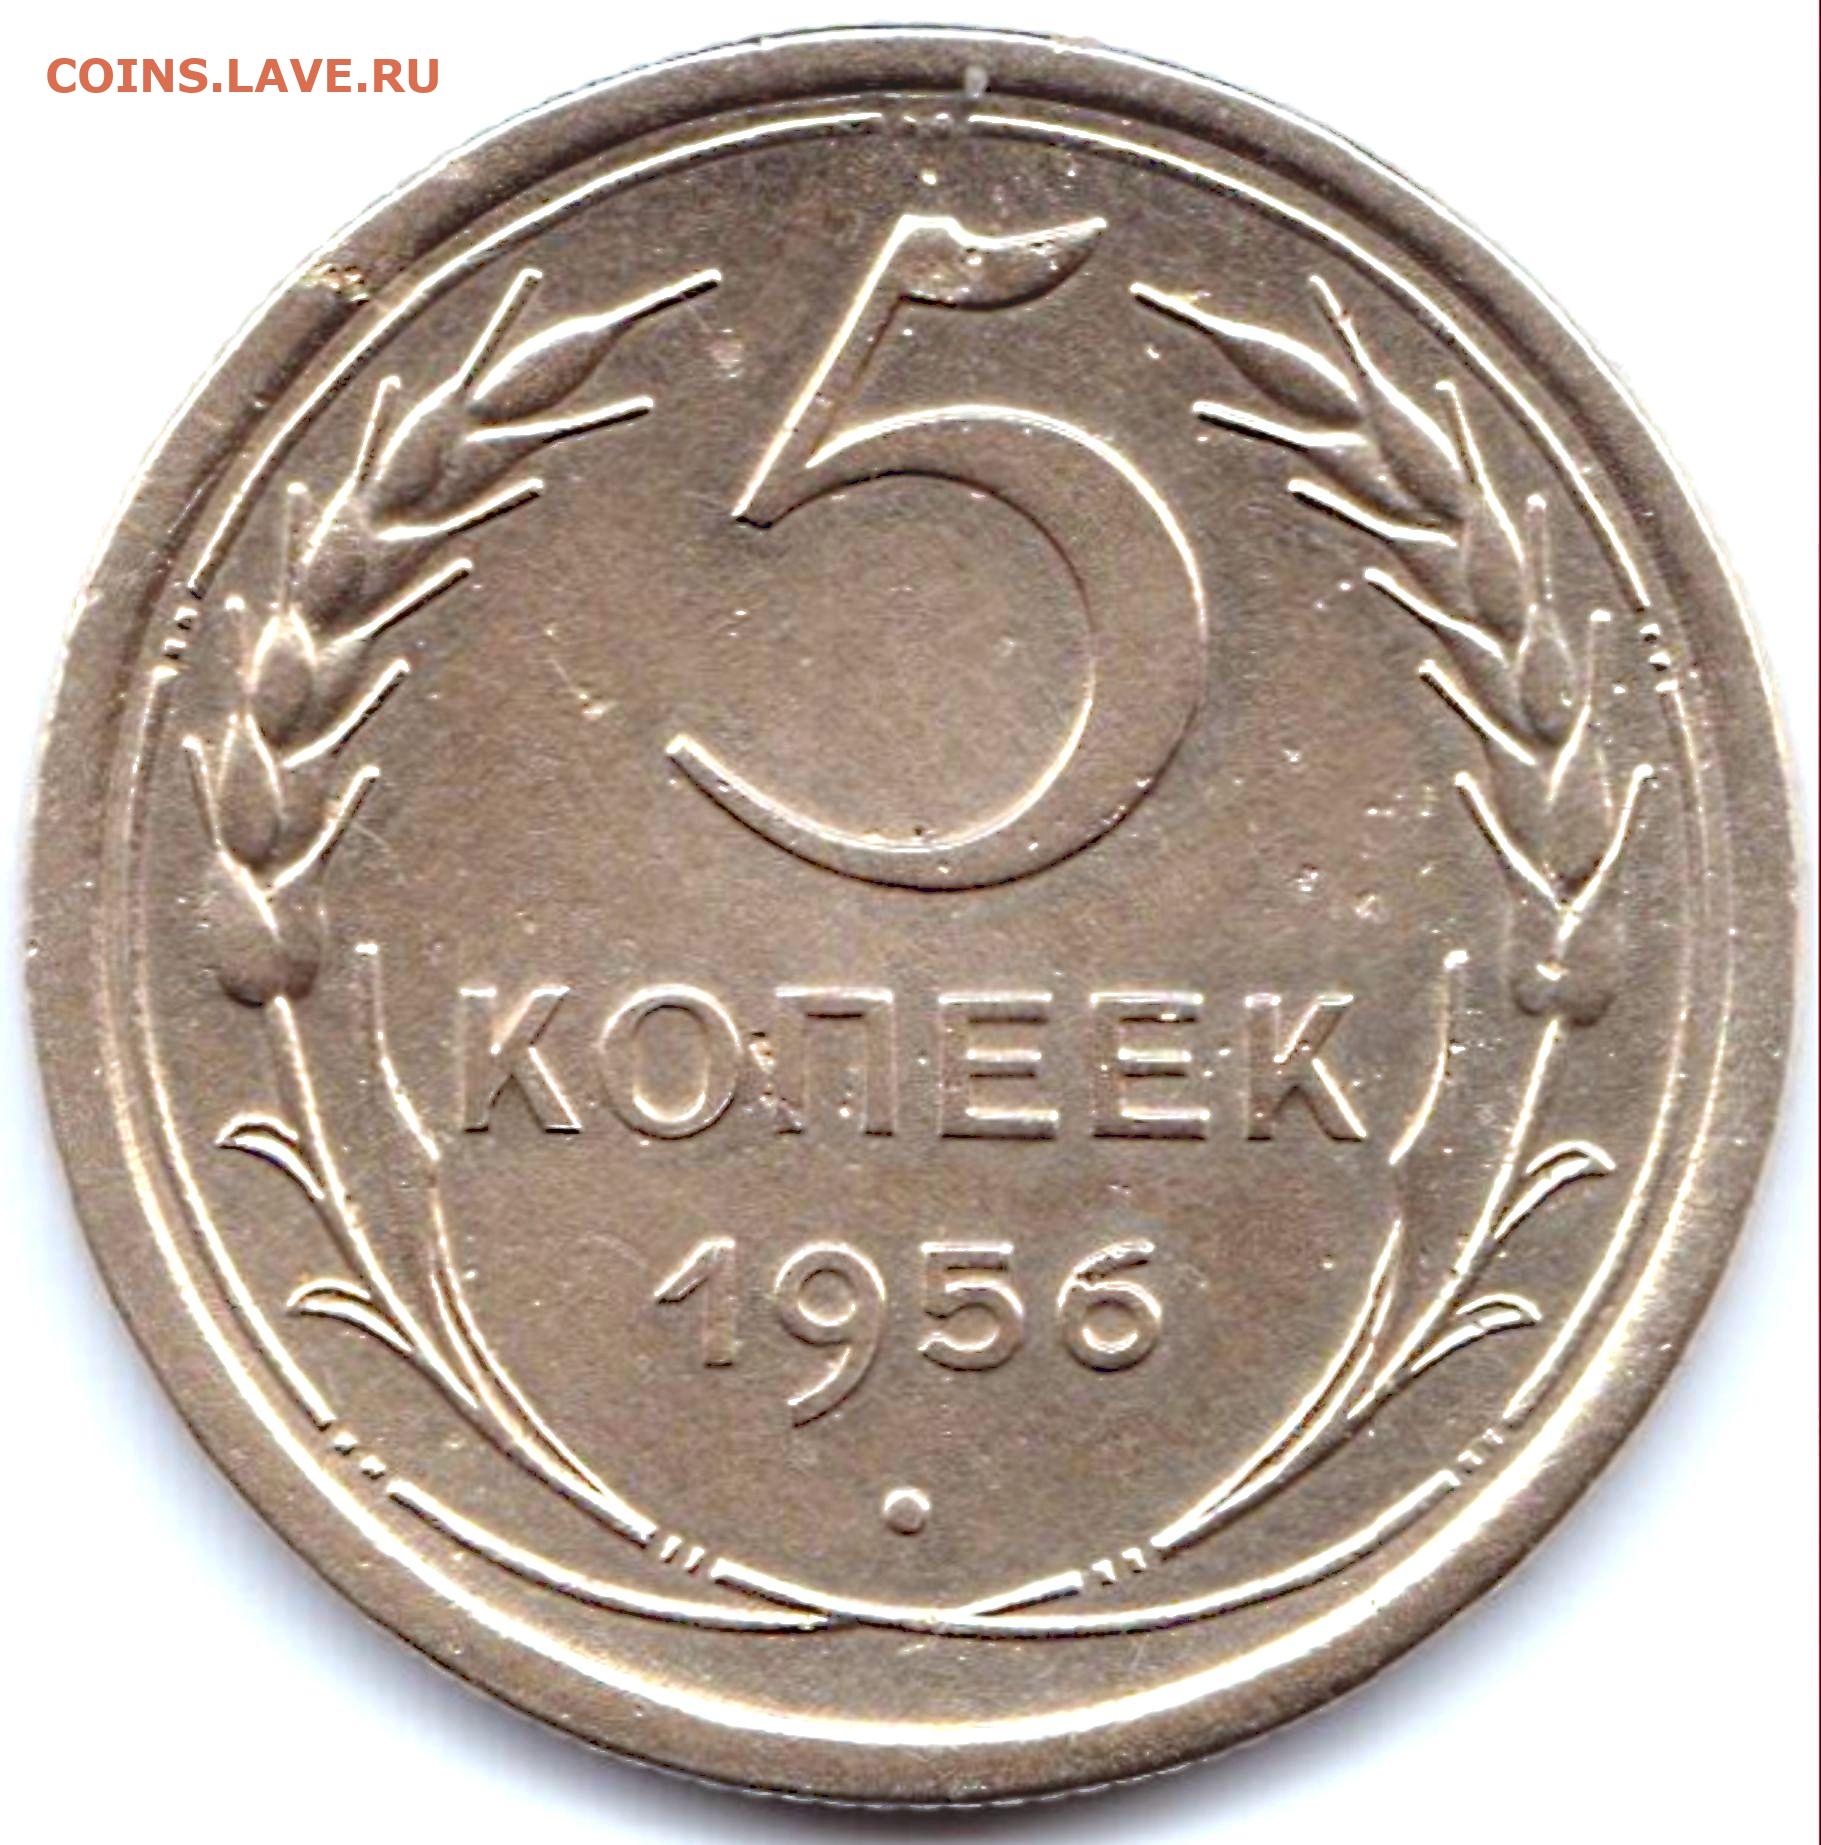 5 копеек 45. 0.5 Копейки. Монеты 1956г 5 копеек СССР. 25 Копеек 1955. 20 Копеек 1956г.